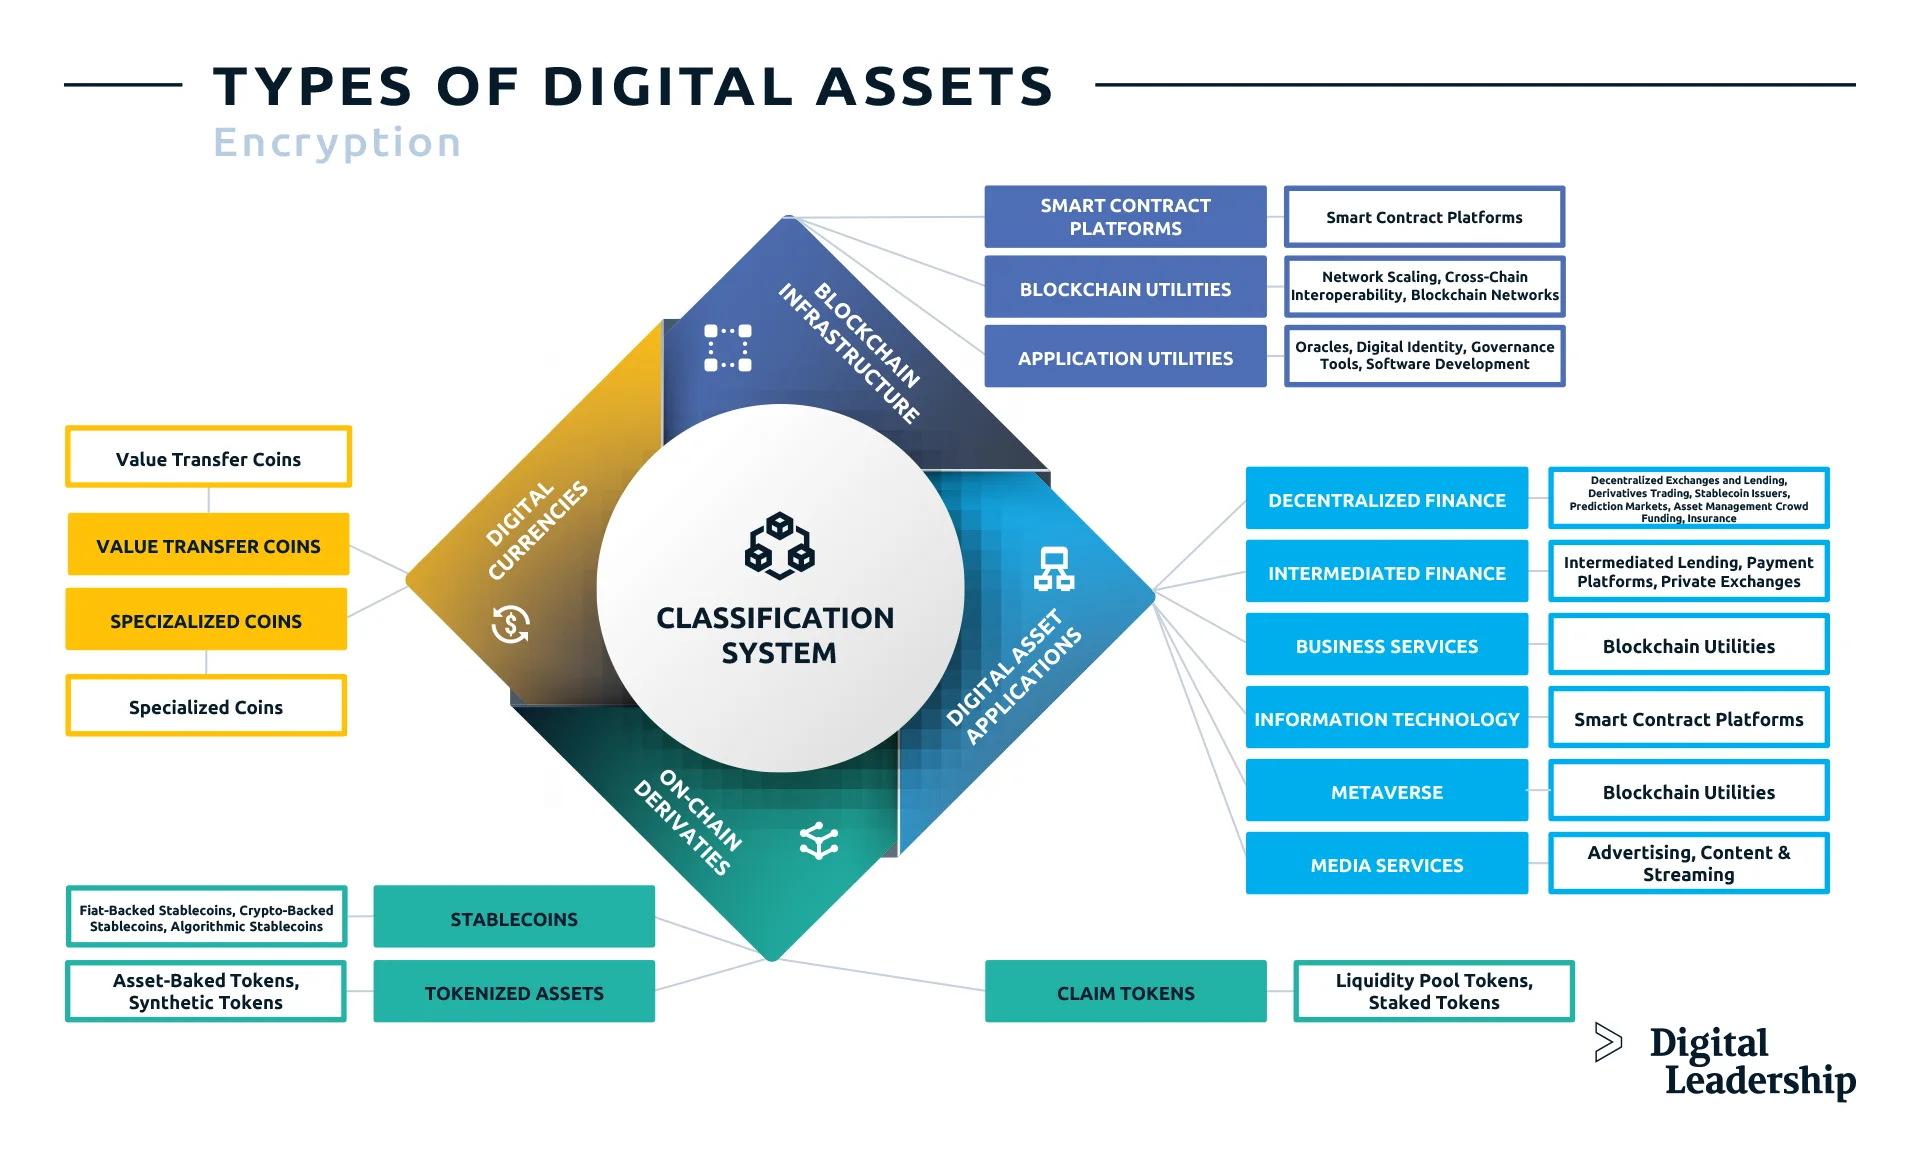 Types of Digital Assets